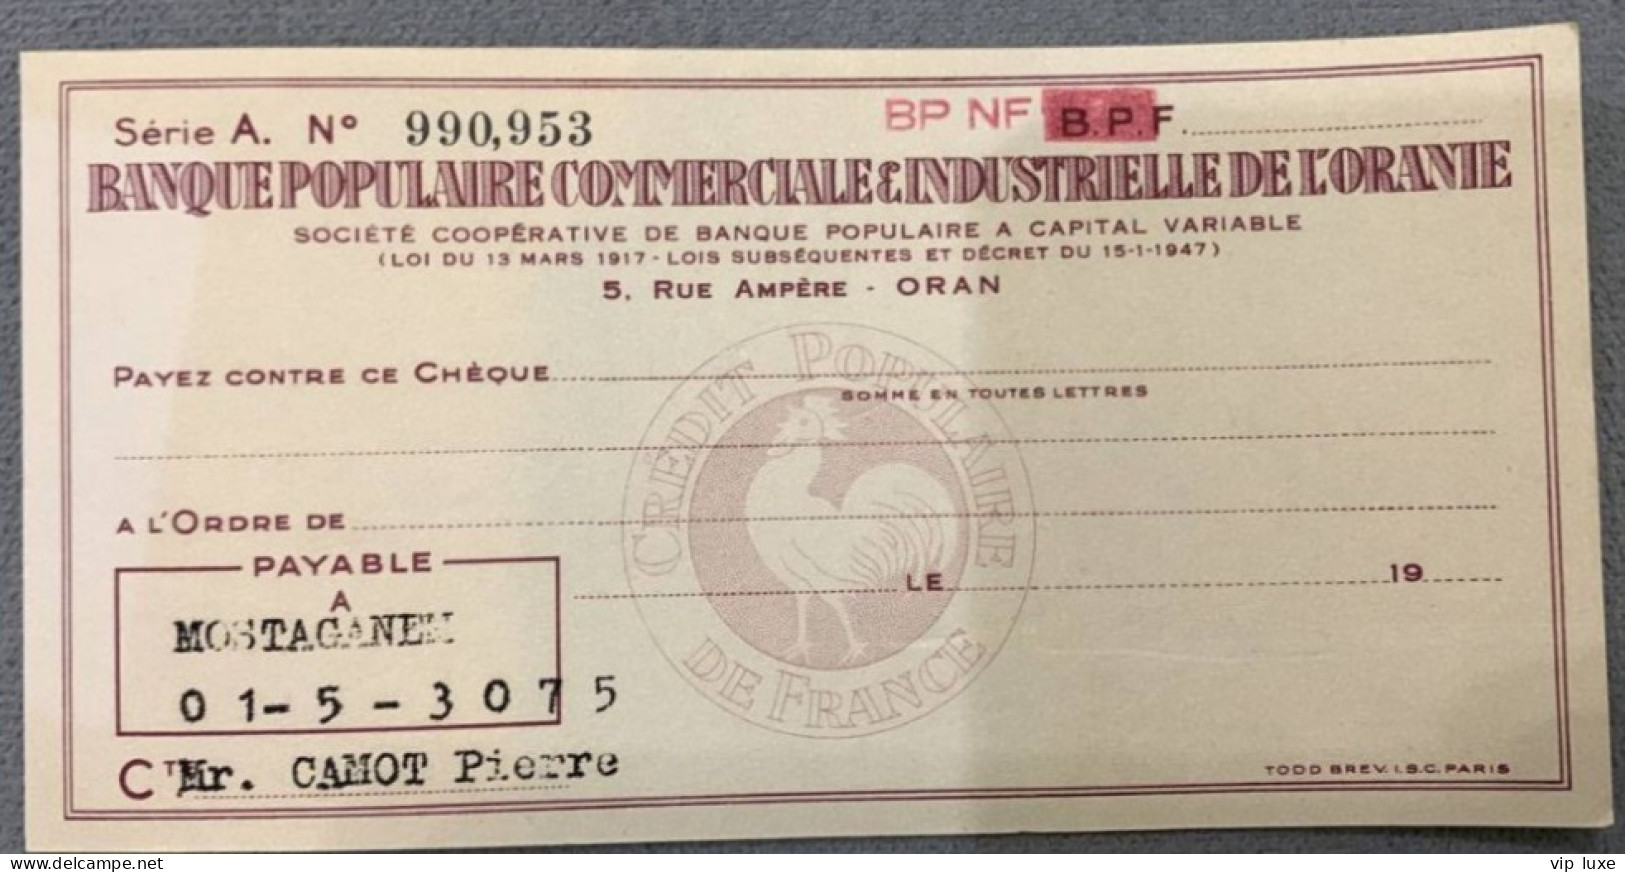 Cheque Banque Populaire Commerciale Et Industrielle De L'oranie 1956 - Cheques & Traveler's Cheques